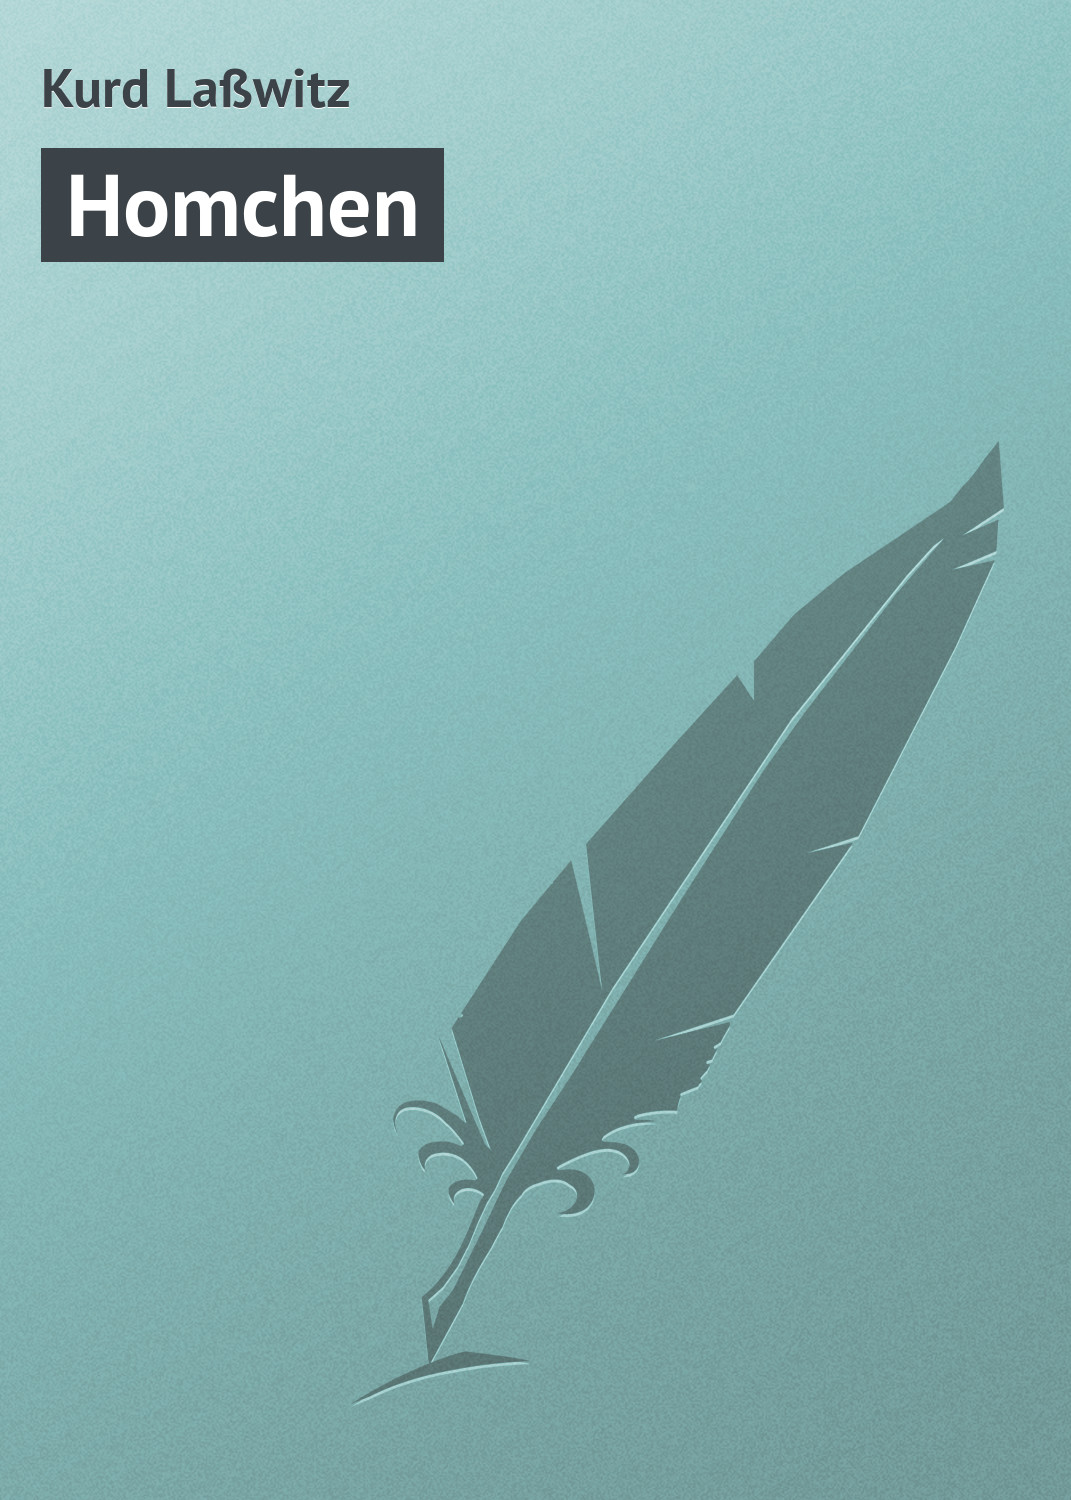 Книга Homchen из серии , созданная Kurd Laßwitz, может относится к жанру Зарубежная старинная литература, Зарубежная классика. Стоимость электронной книги Homchen с идентификатором 21107150 составляет 5.99 руб.